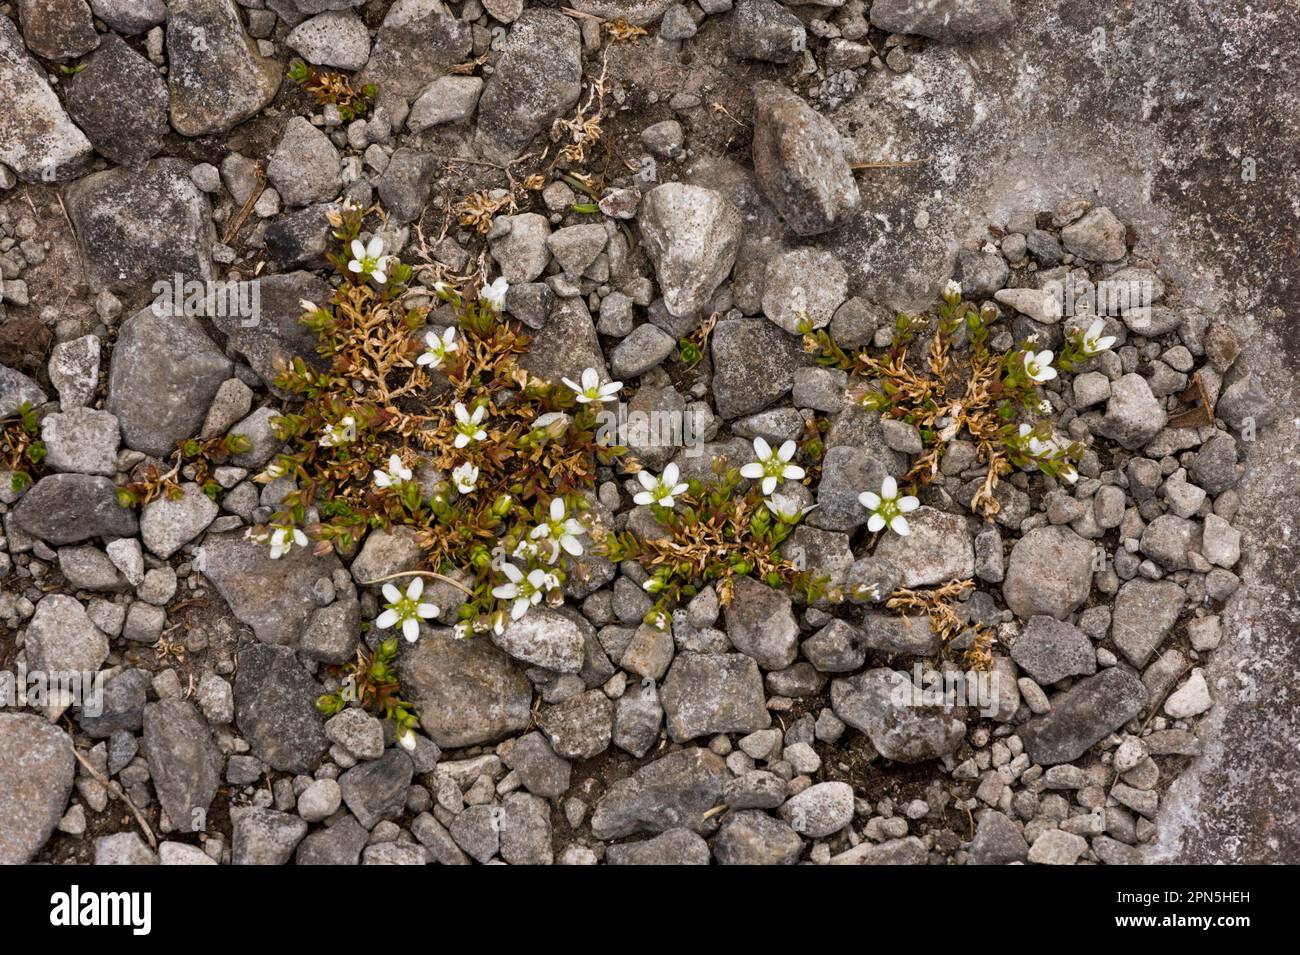 Norwegian sandwort, Clove family, Arctic sandwort (Arenaria norvegica ssp. norvegica) flowering, growing on limestone, The Burren, County Clare Stock Photo